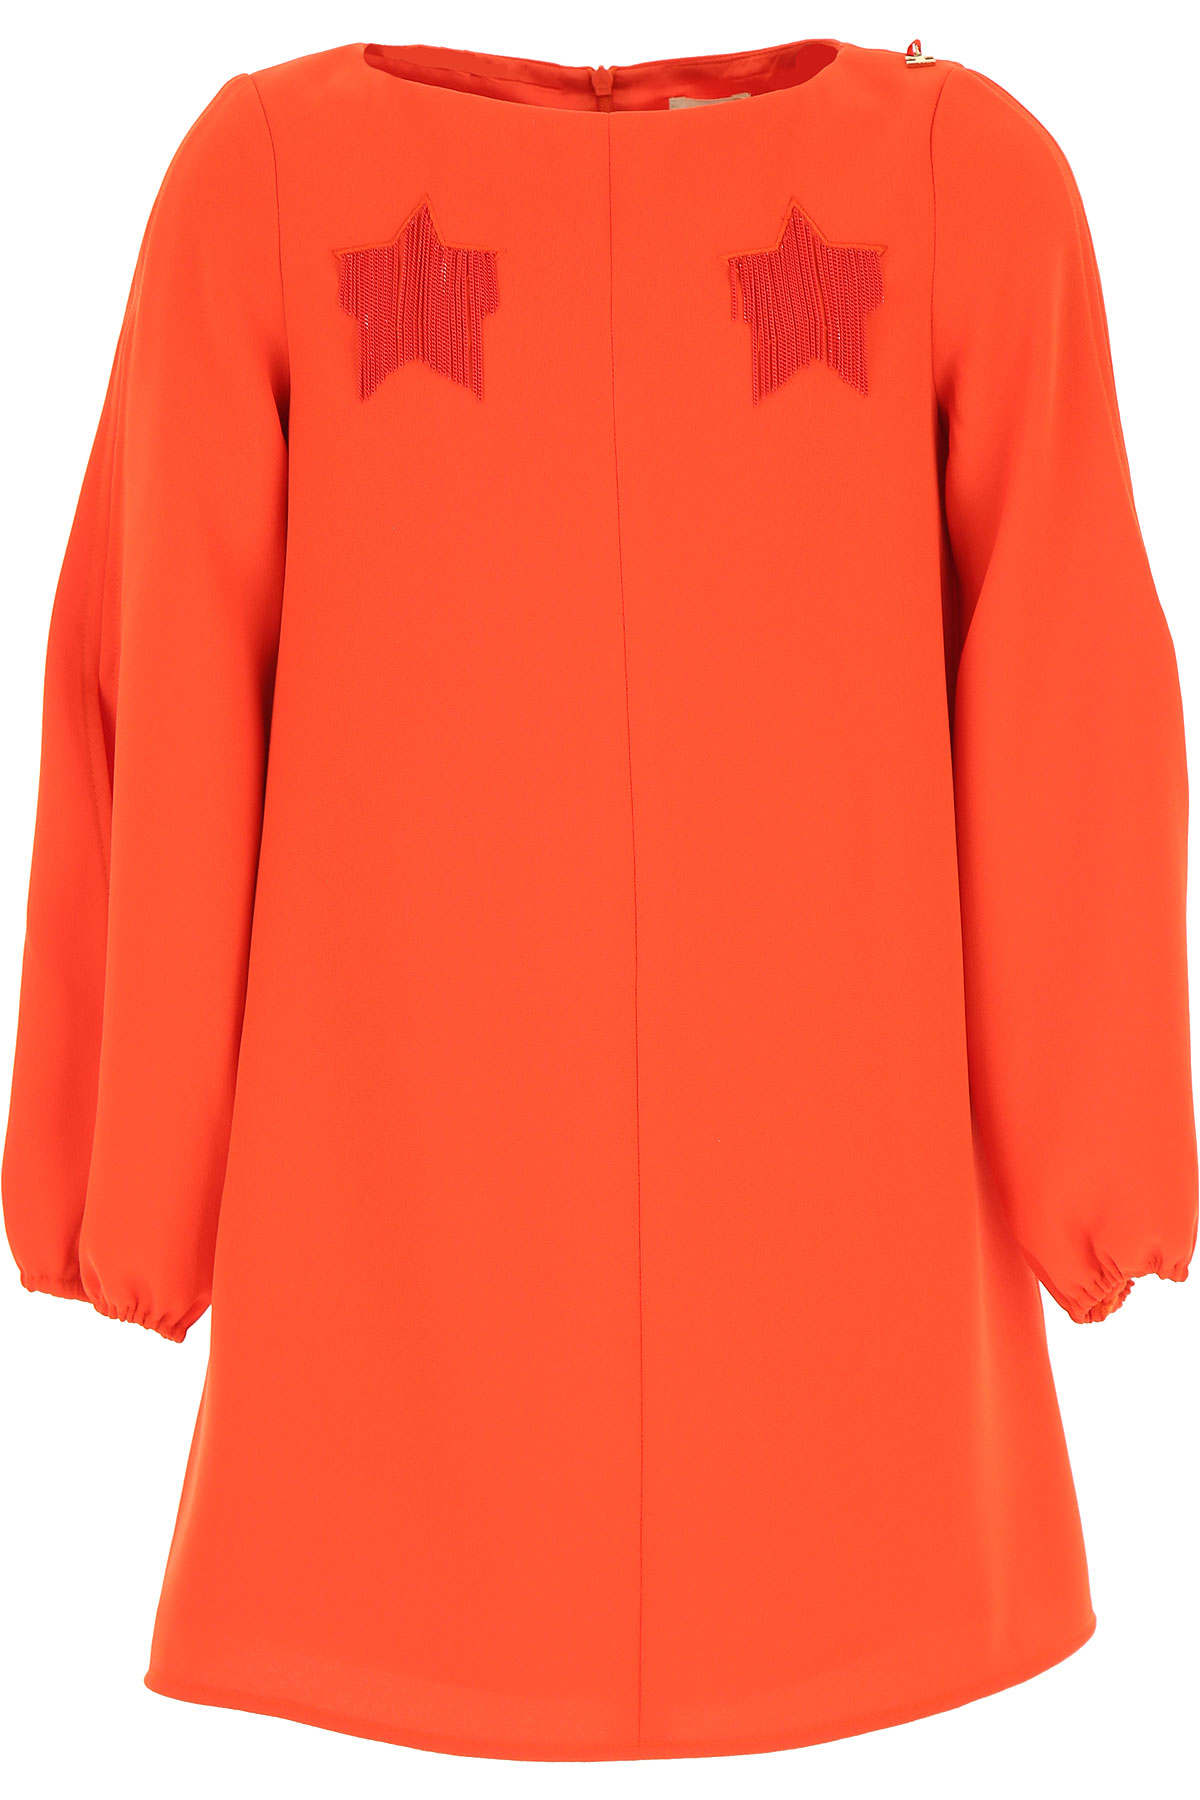 Elisabetta Franchi Kleid für Mädchen Günstig im Sale, Koralle, Polyester, 2017, L M XL